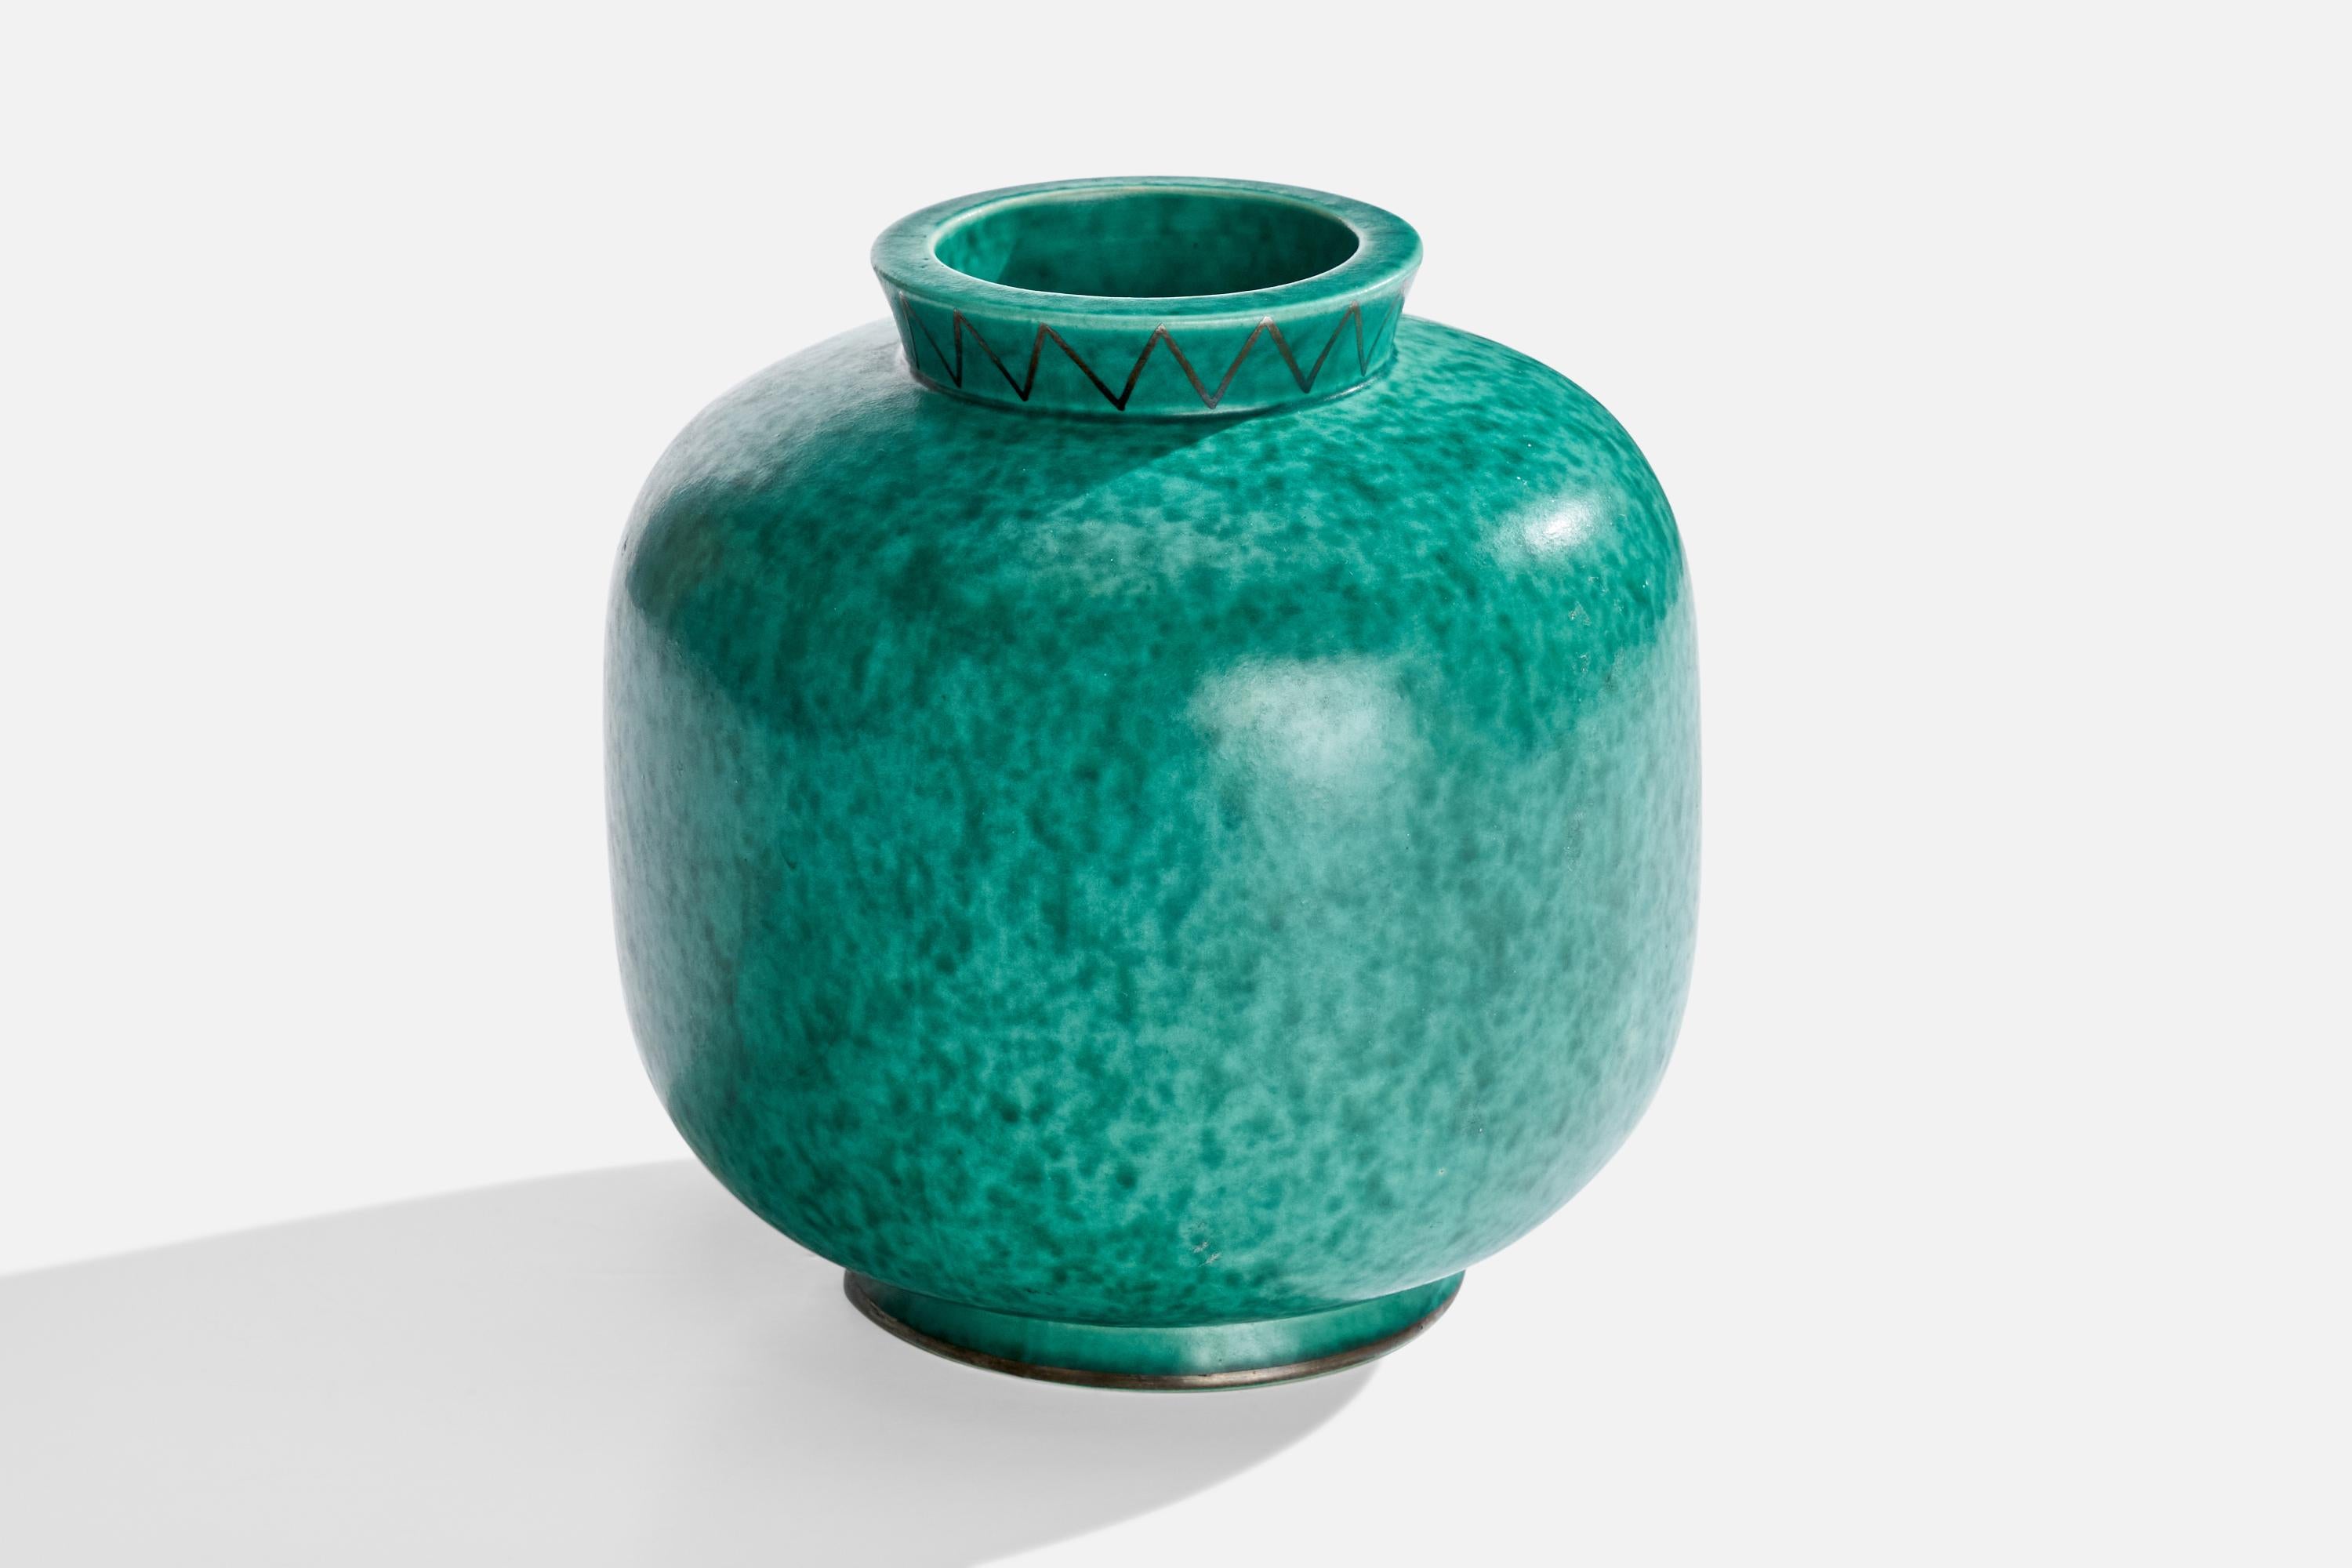 Vase en grès émaillé vert avec peinture argentée, conçu par Wilhelm Kåge et produit par Gustavsberg, Suède, c.C. 1950.